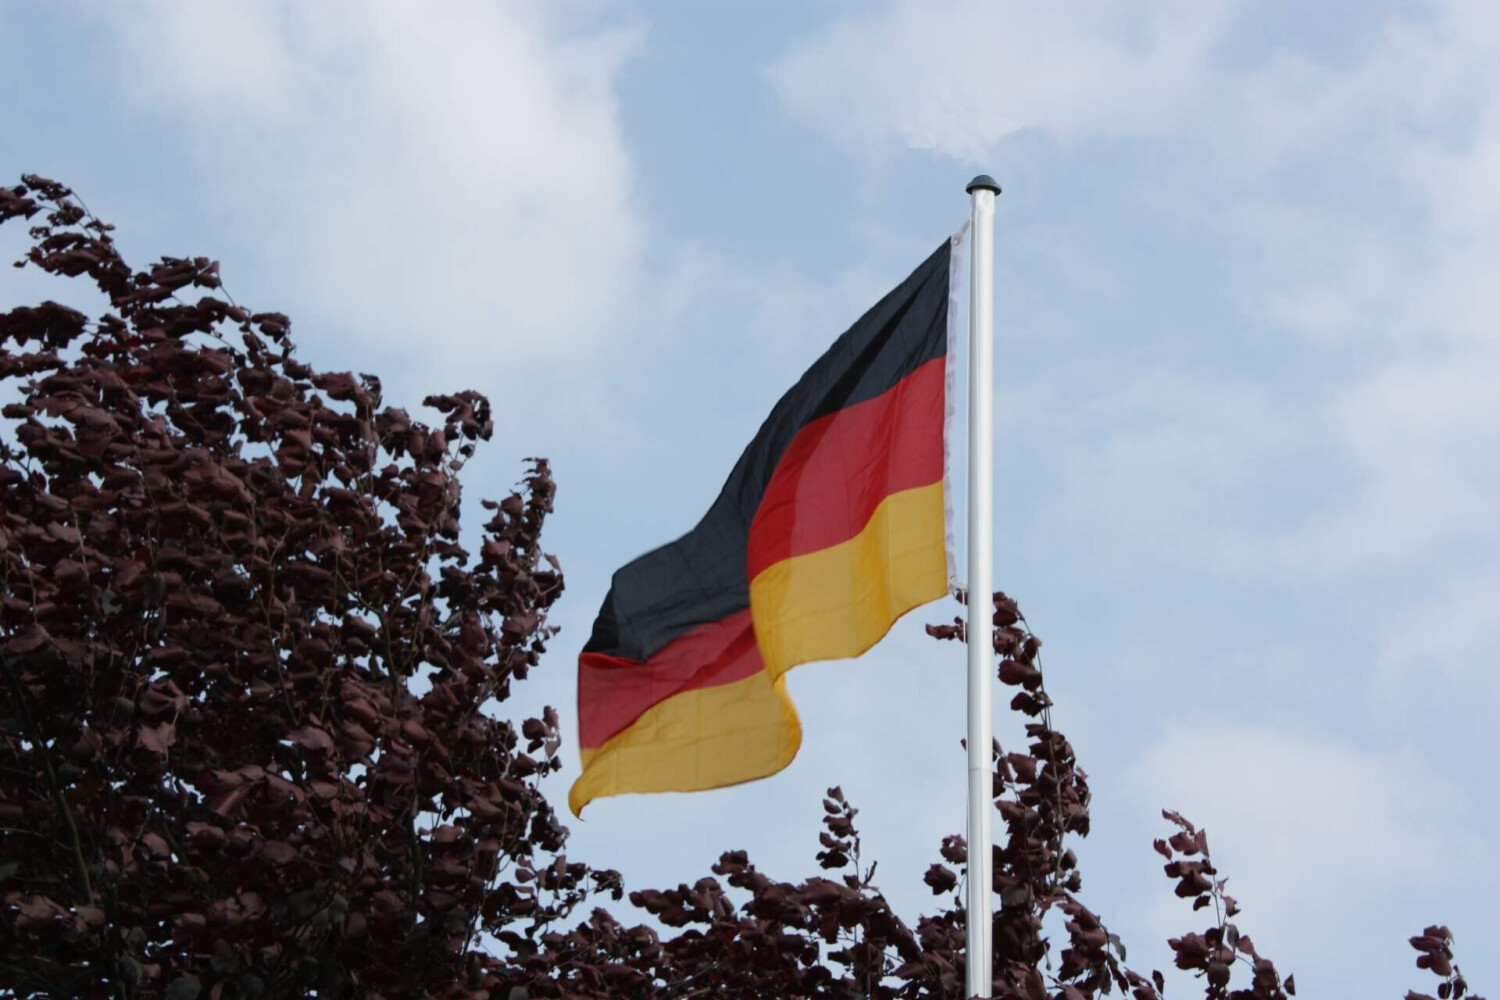 GD-World Flaggenmast 6,20 m + Deutschland Fahne ab 37,99